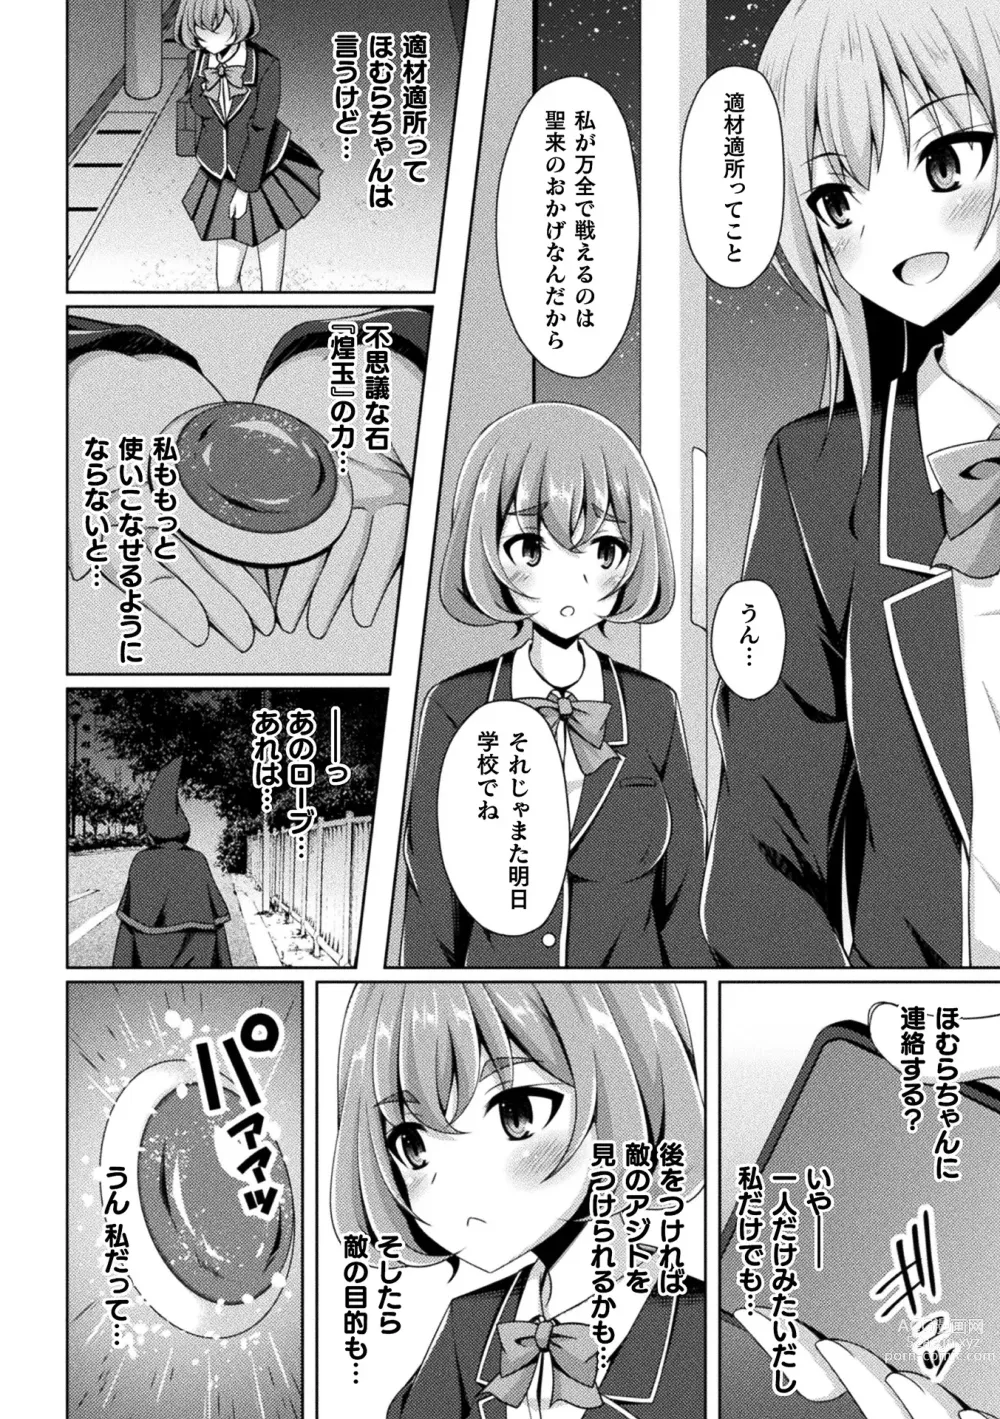 Page 4 of manga Kougyoku Tenki Glitter Stars ep1-4